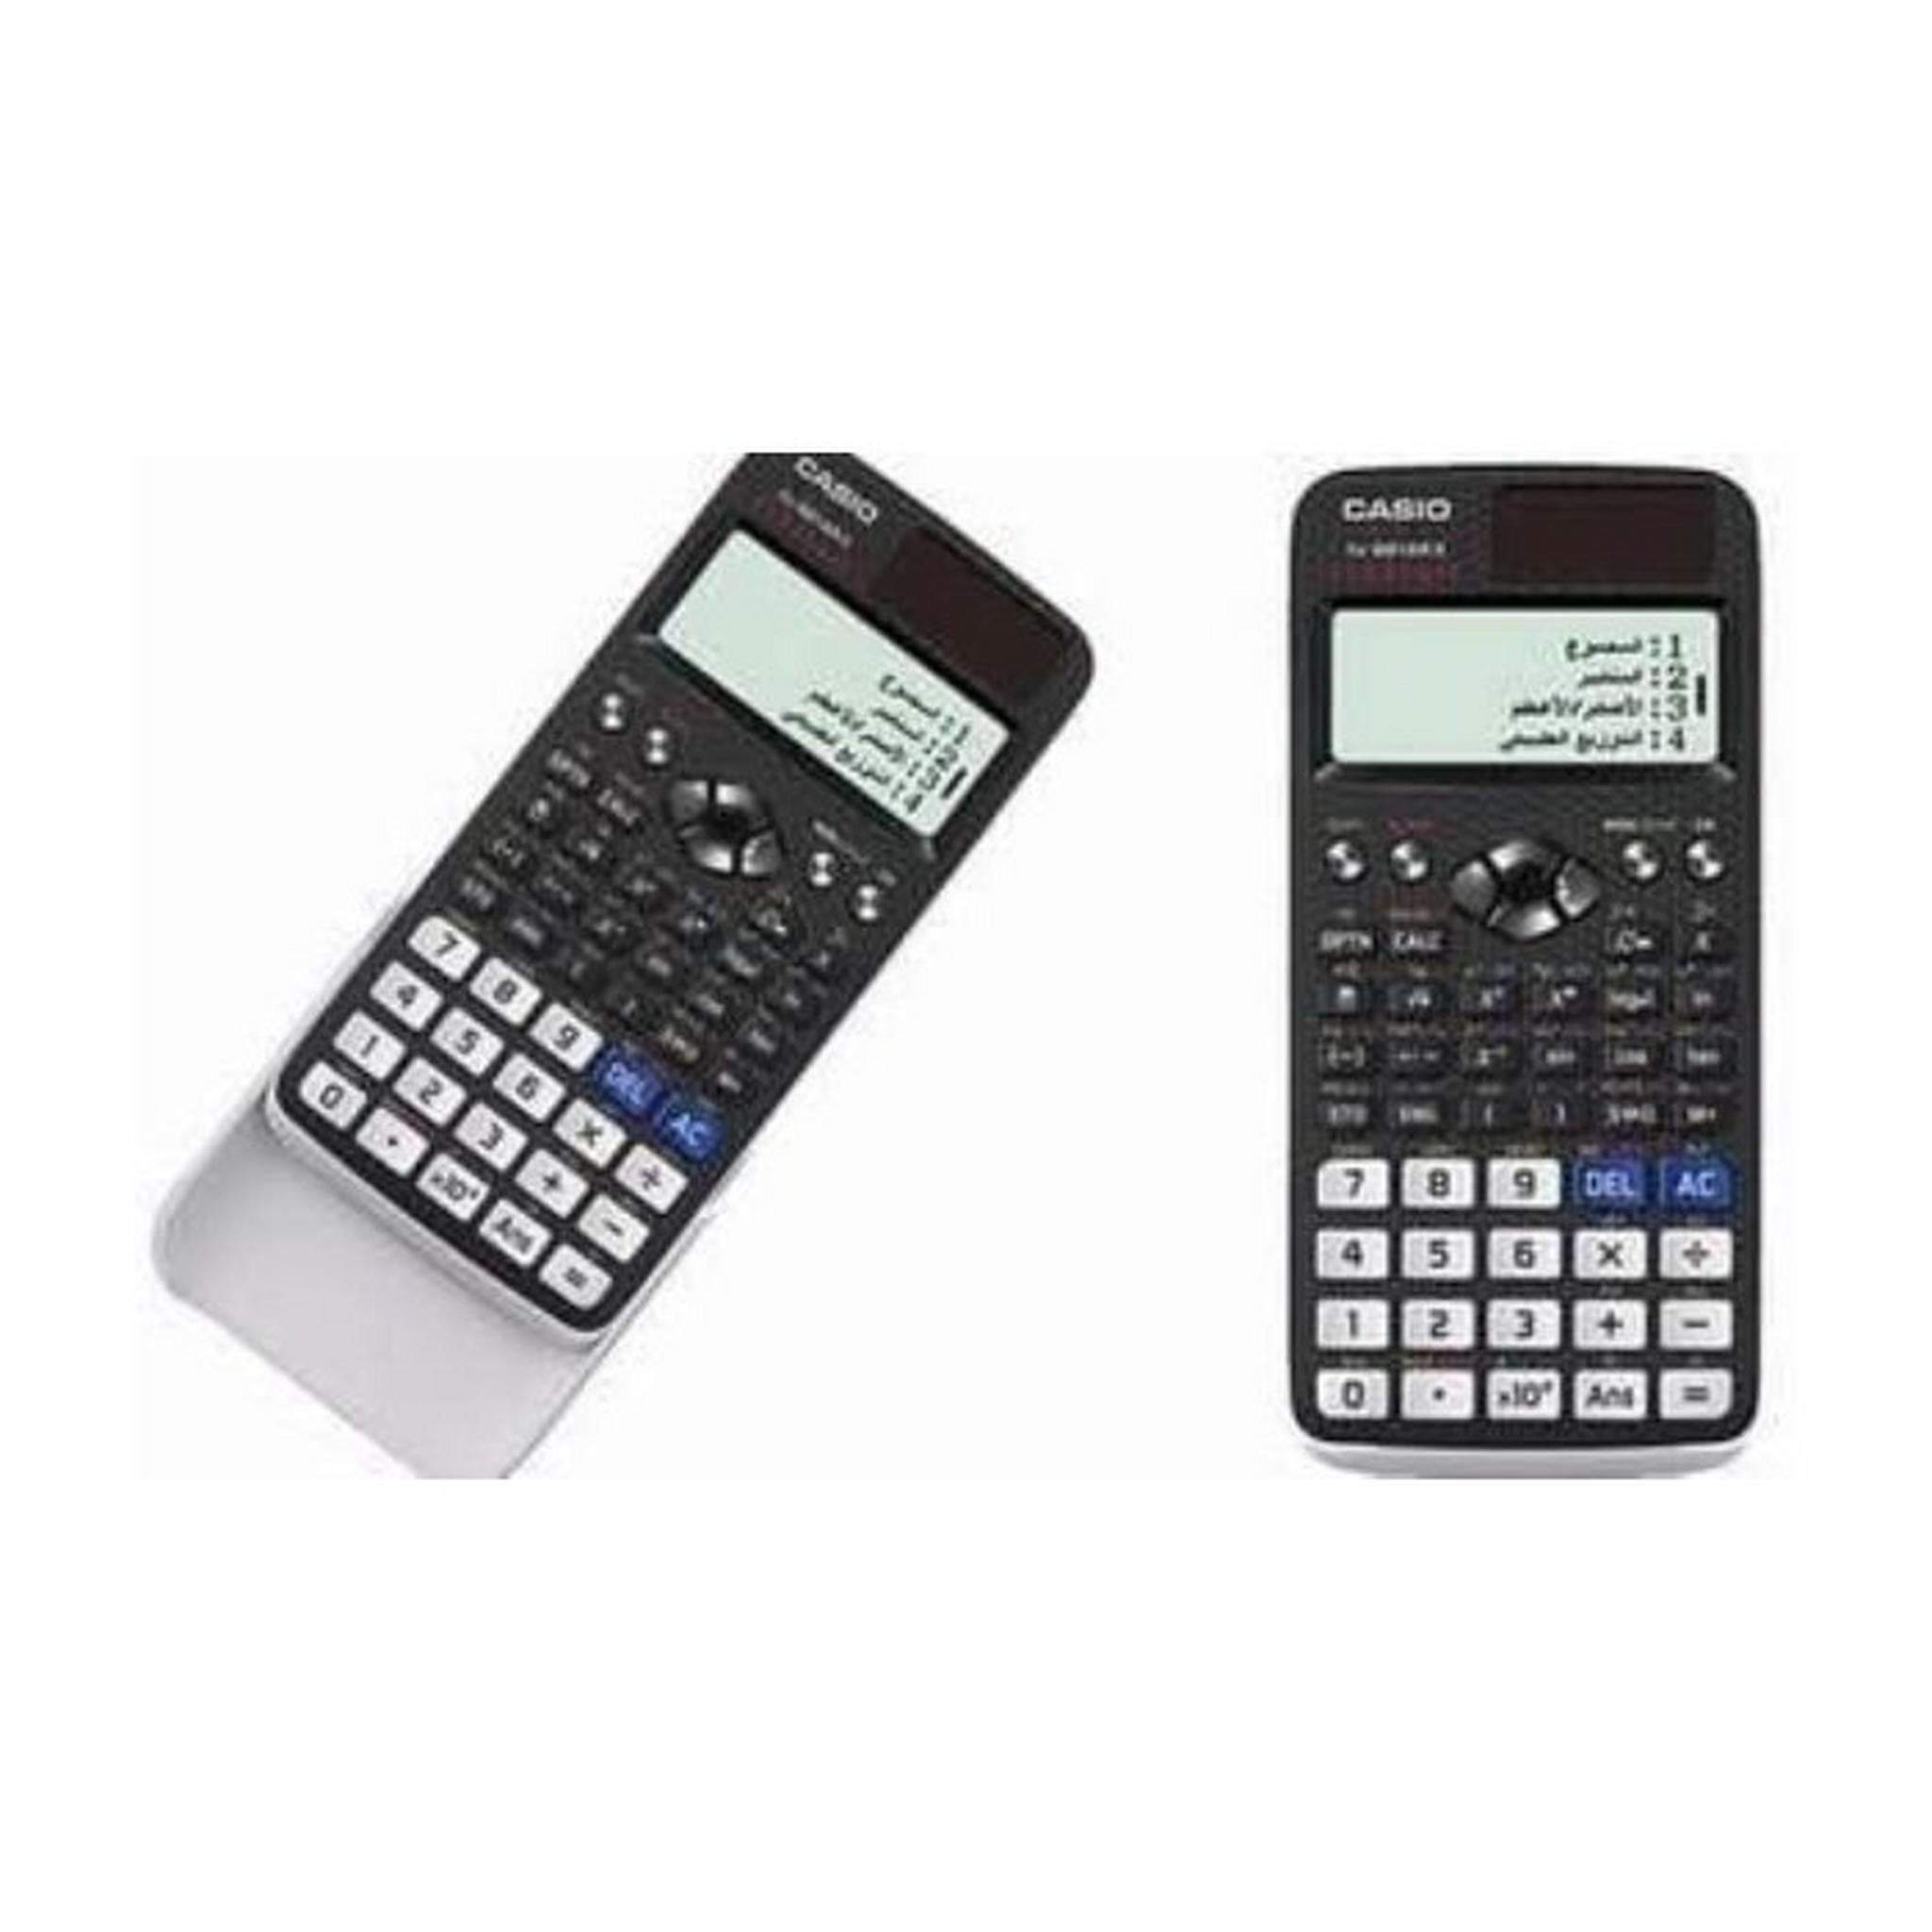 Casio Scientific Calculator (FX-991ARX)